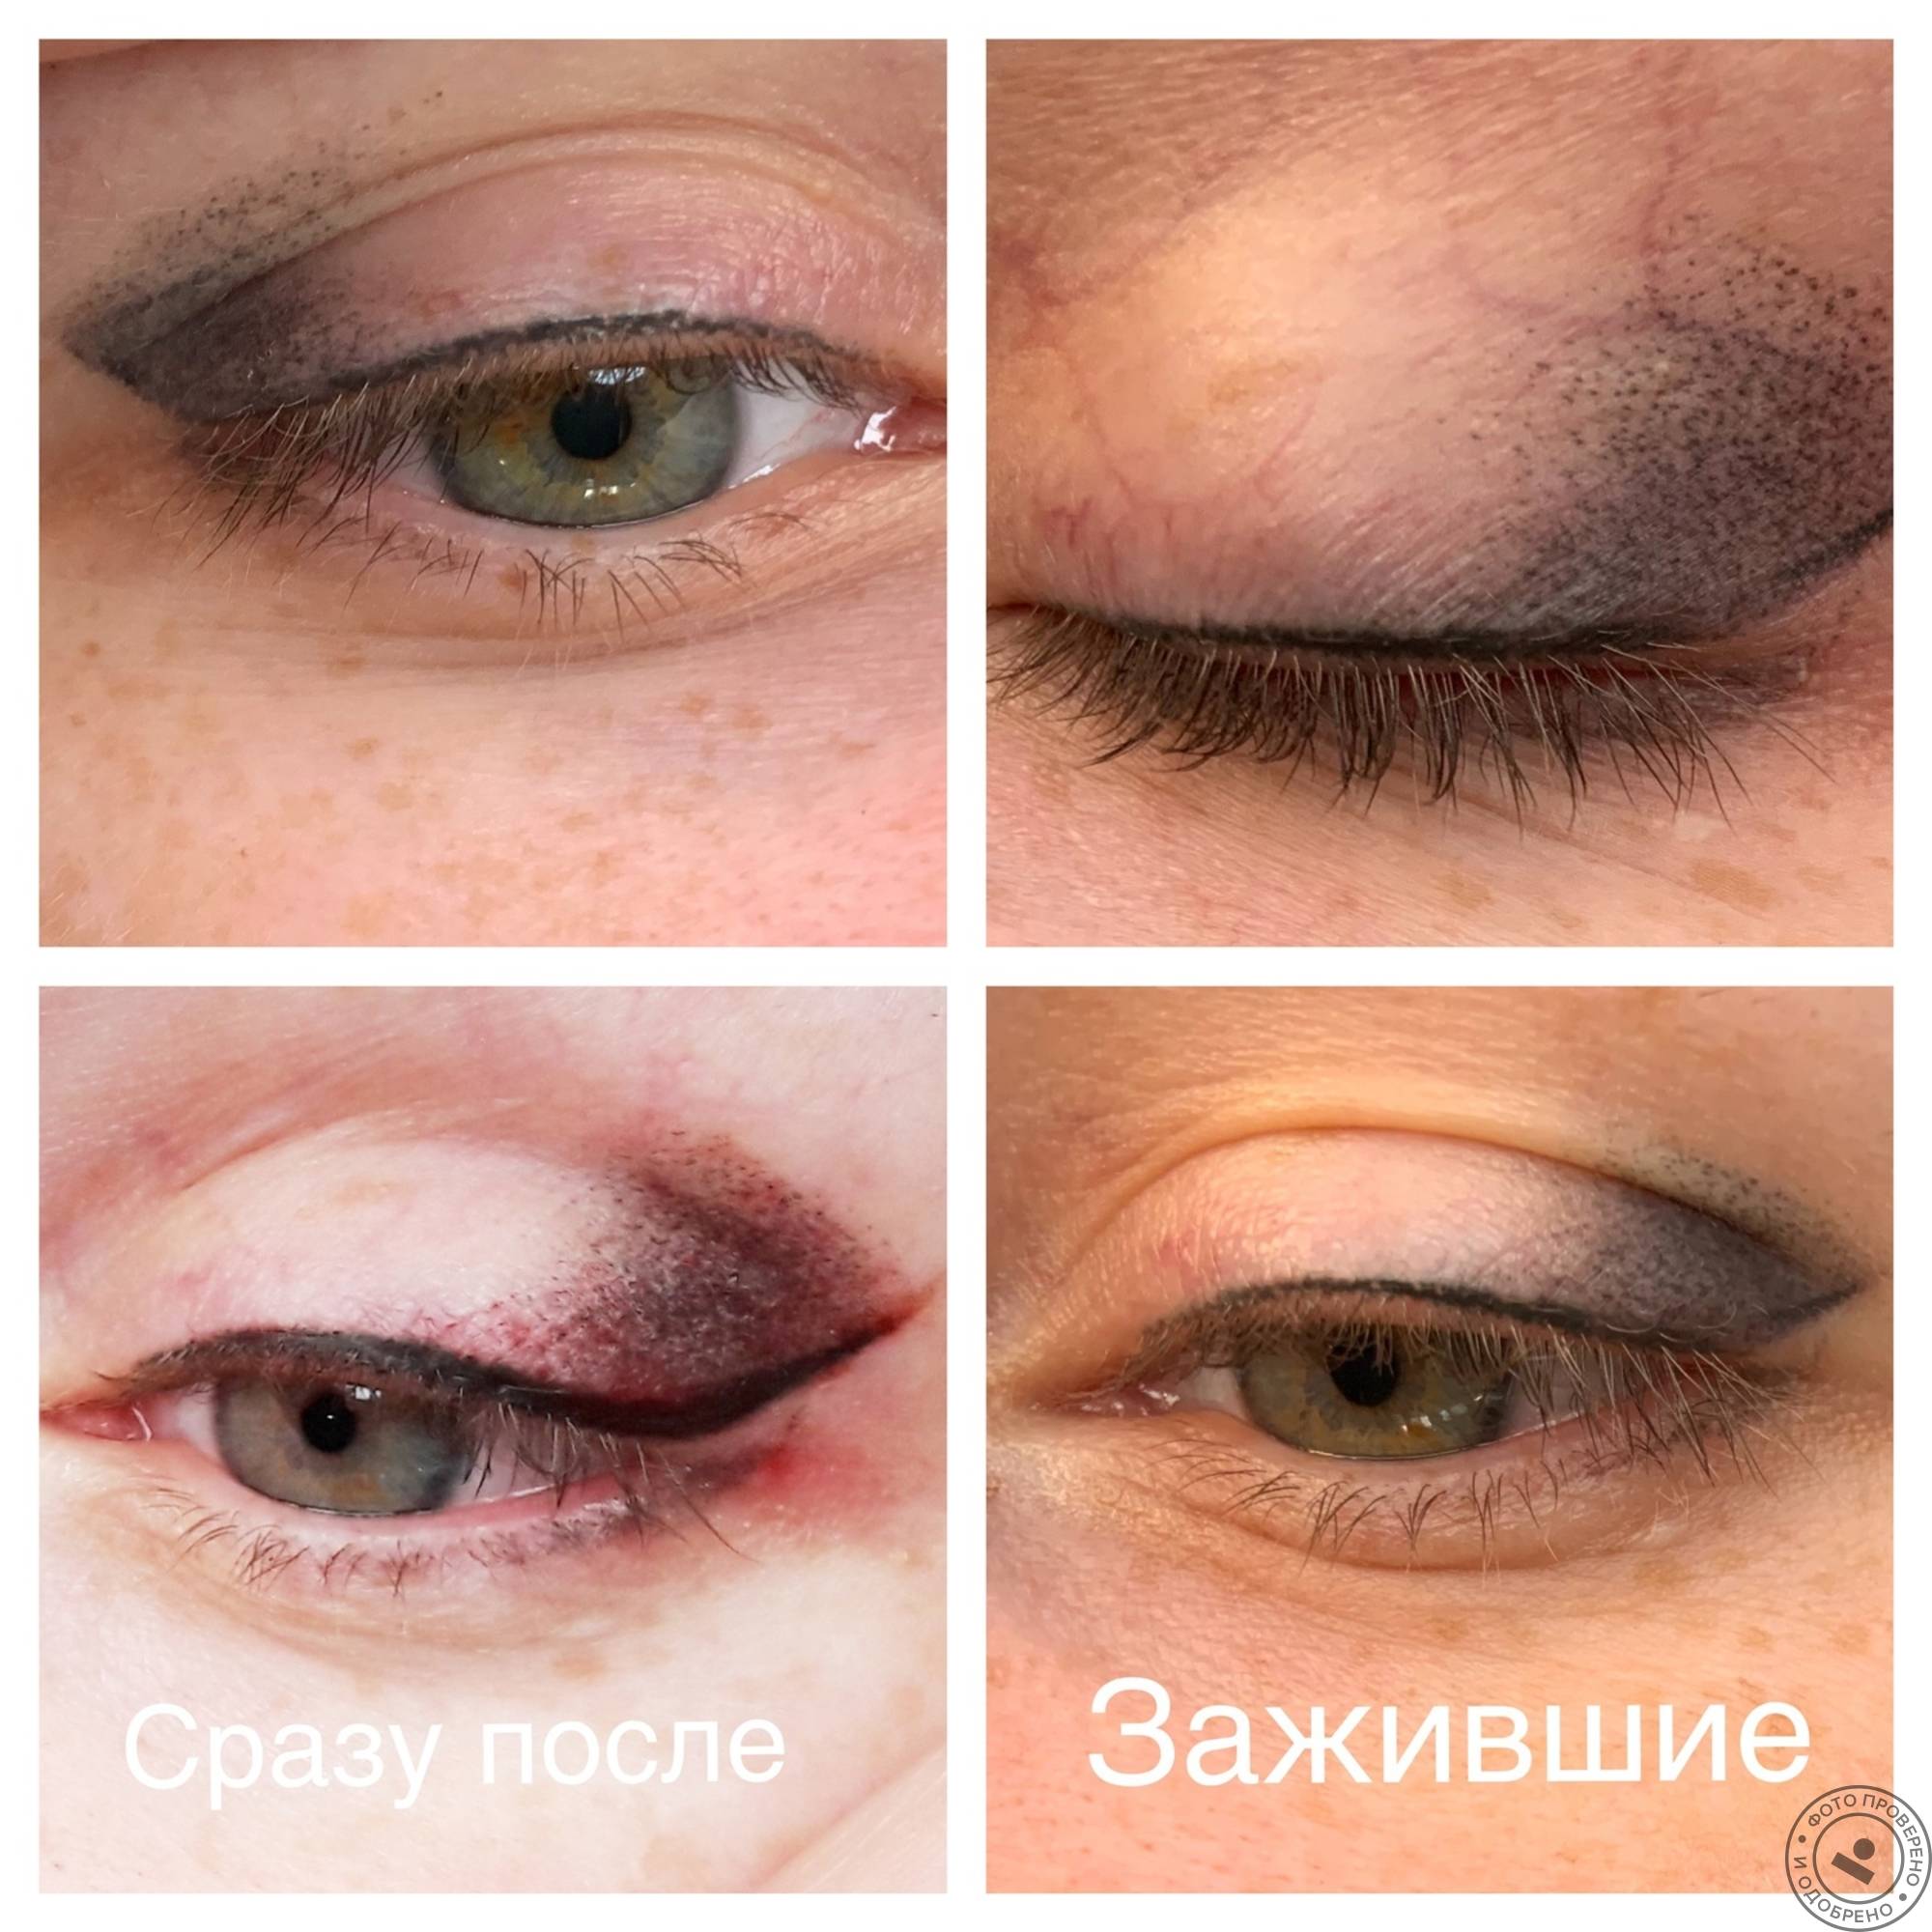 Татуаж глаз и век - все о процедуре, фото до и после